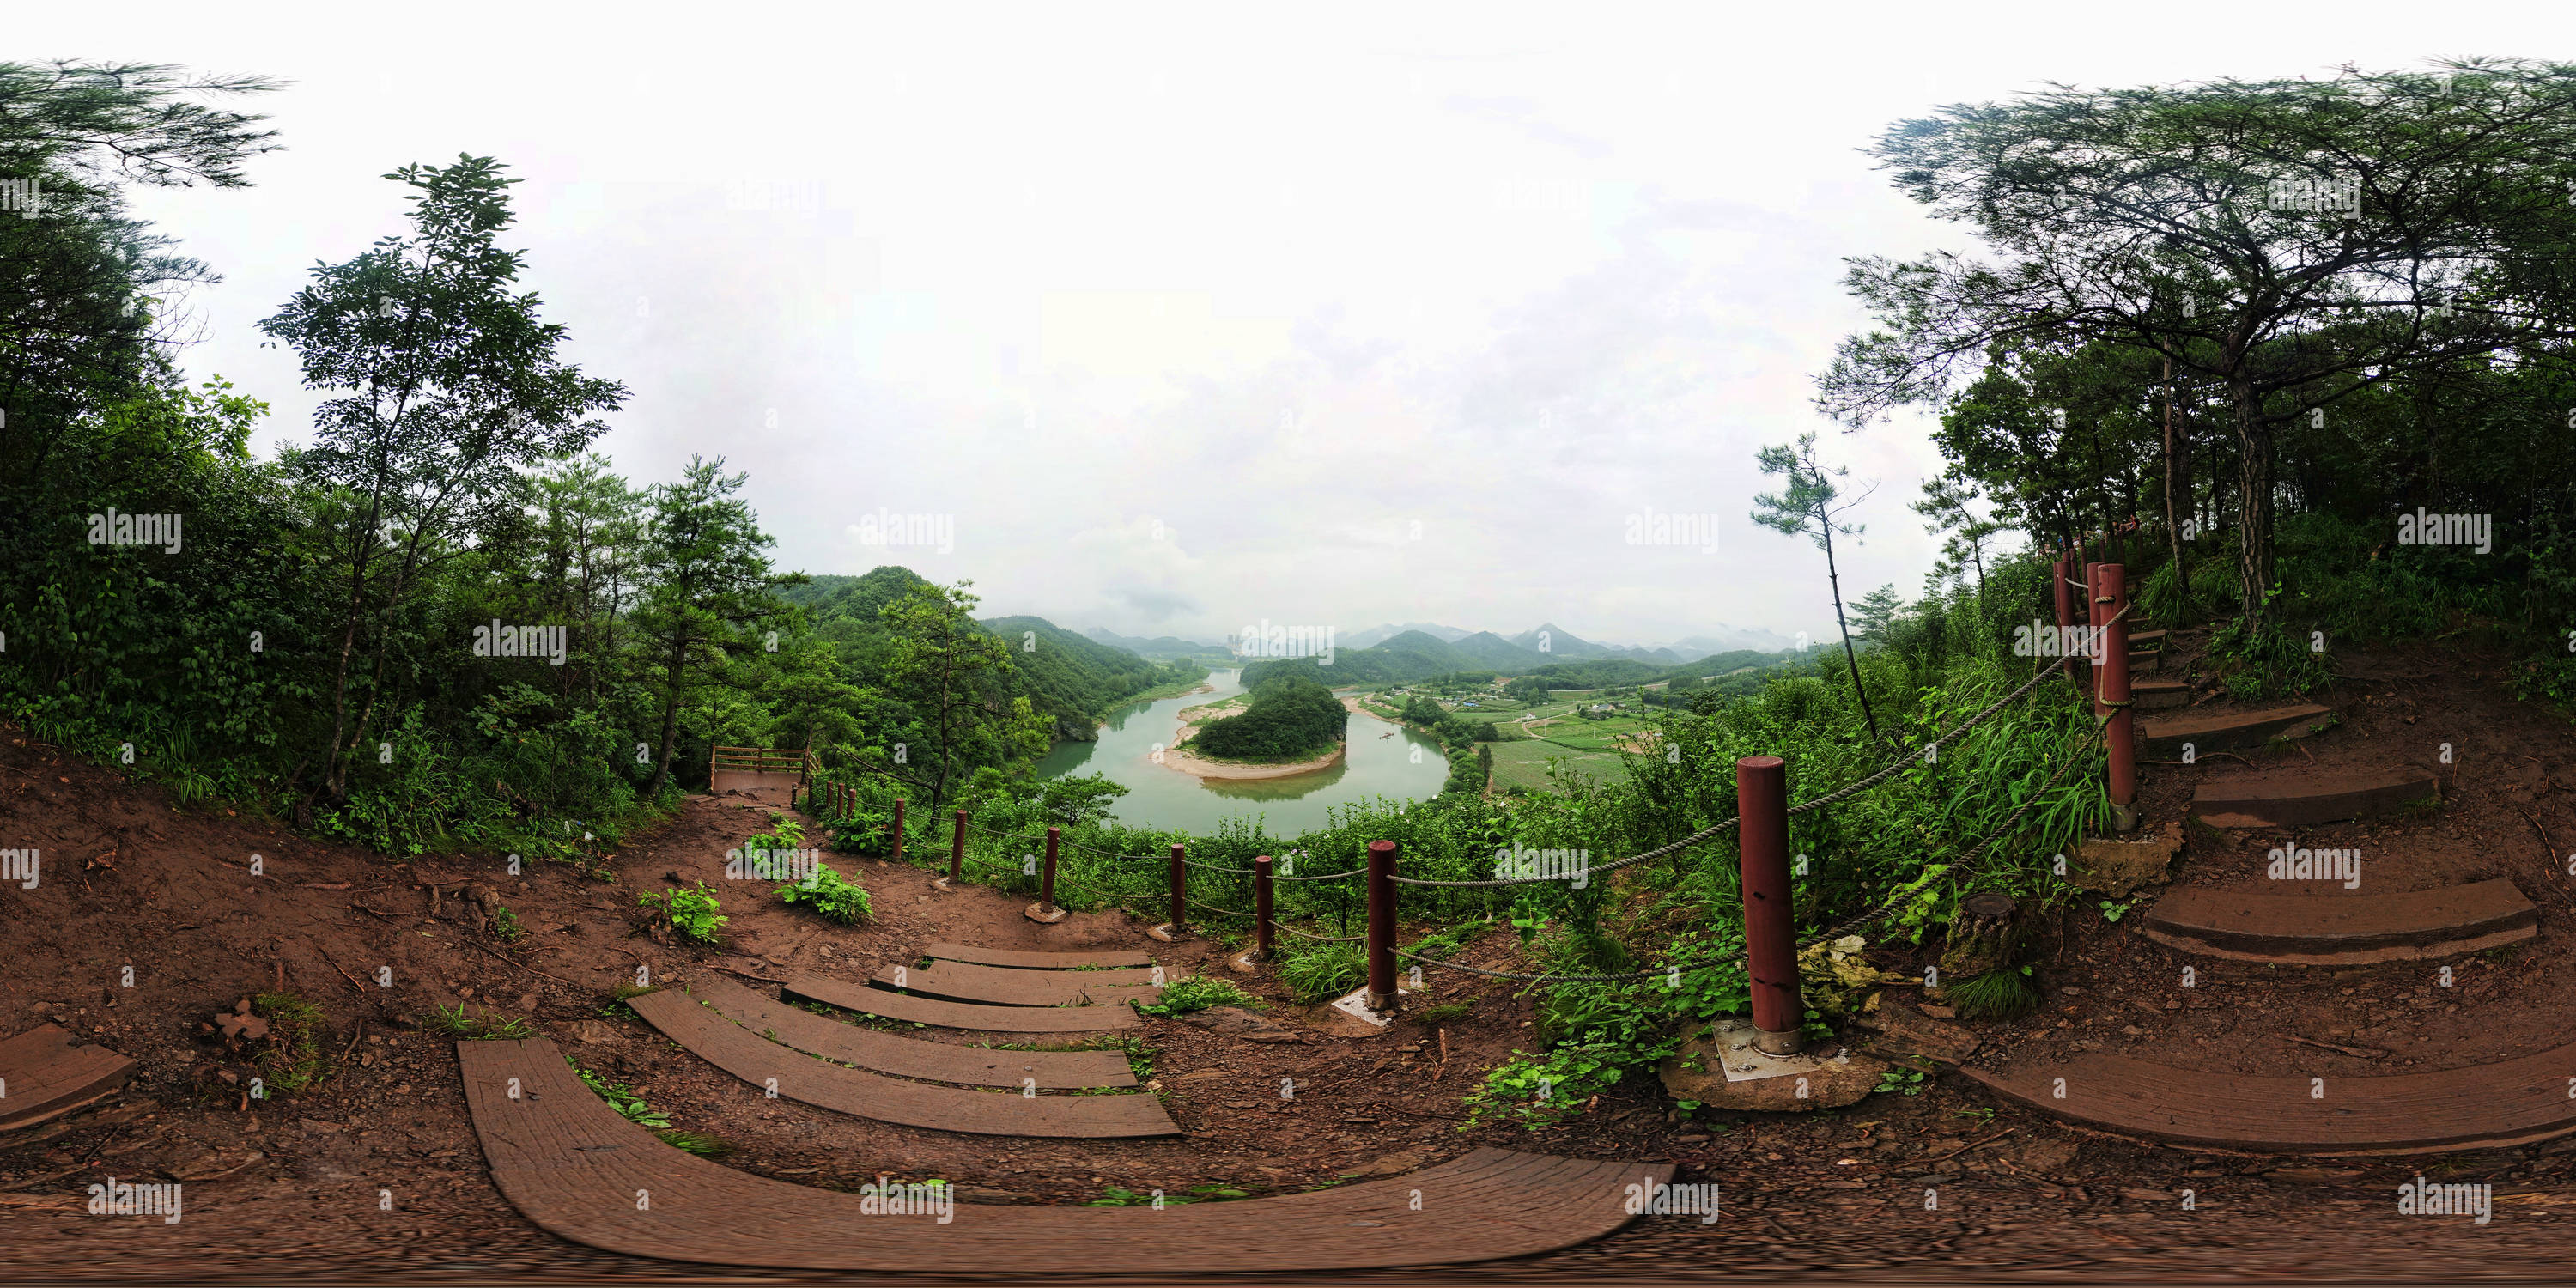 360 degree panoramic view of Korea Peninsula Feature